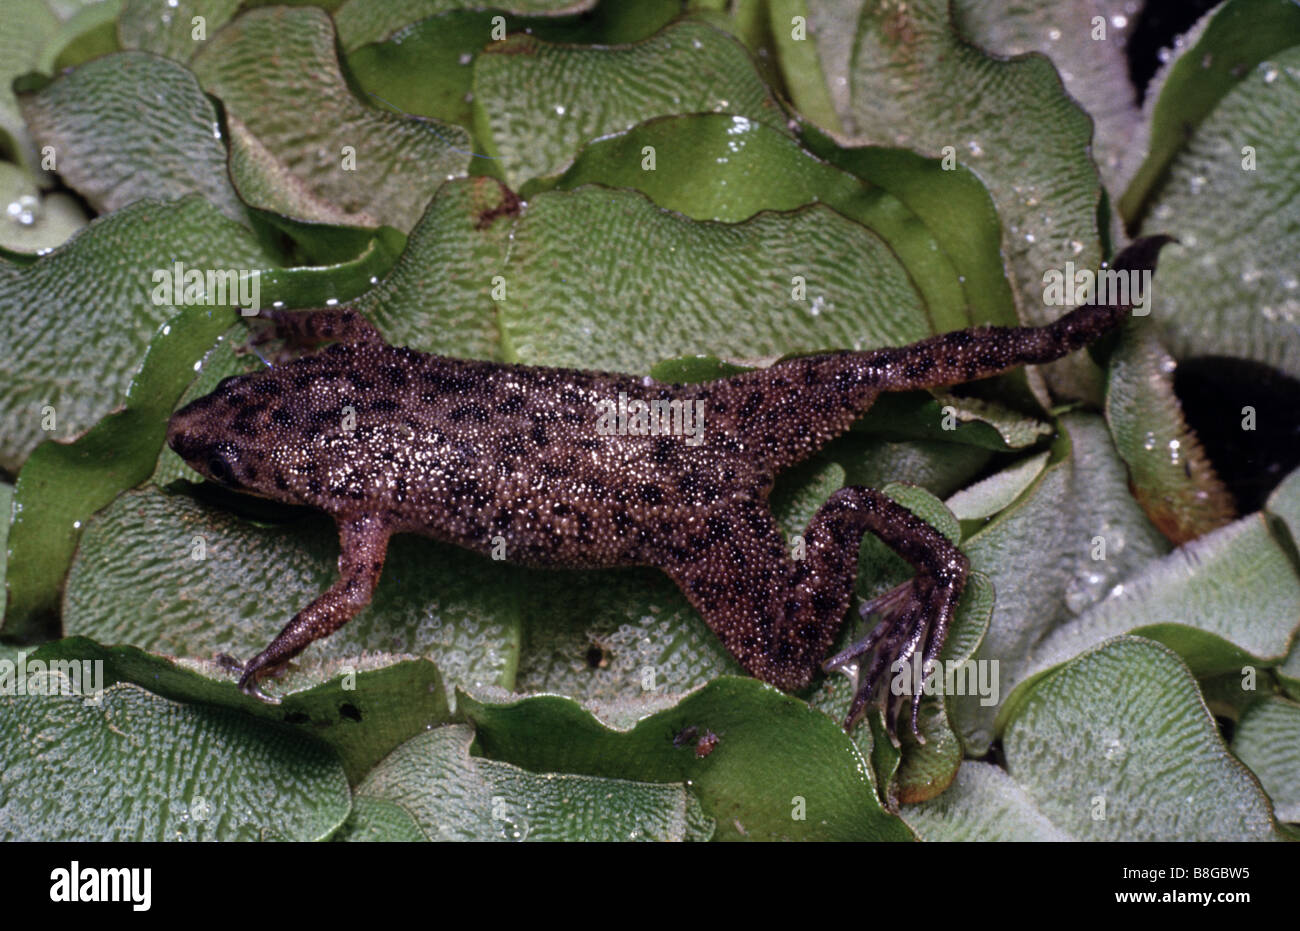 Hymenochirus boettgeri, Dwarf african clawed frog Stock Photo